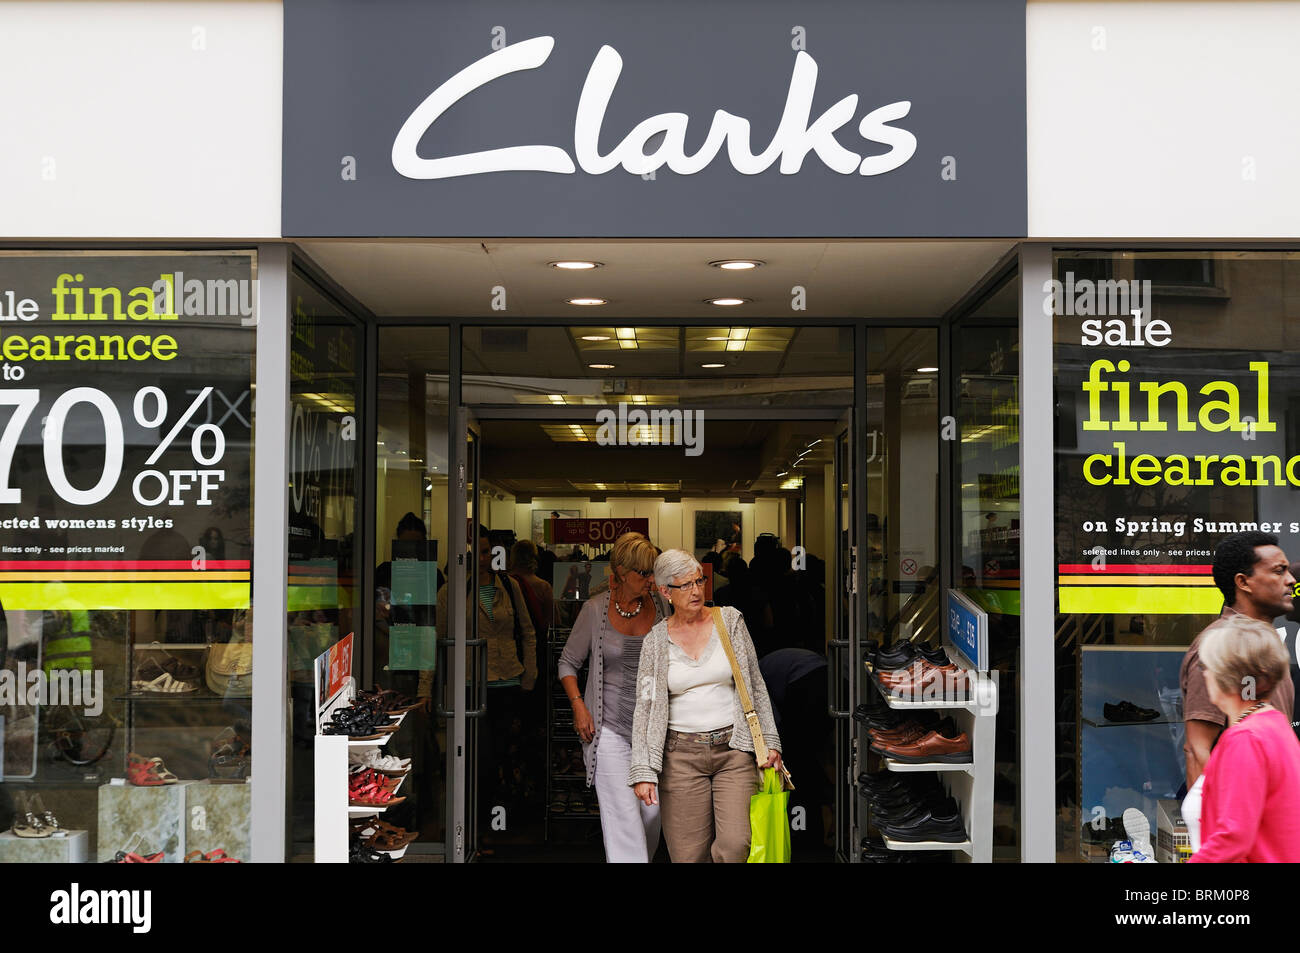 clarks shoe outlet sale